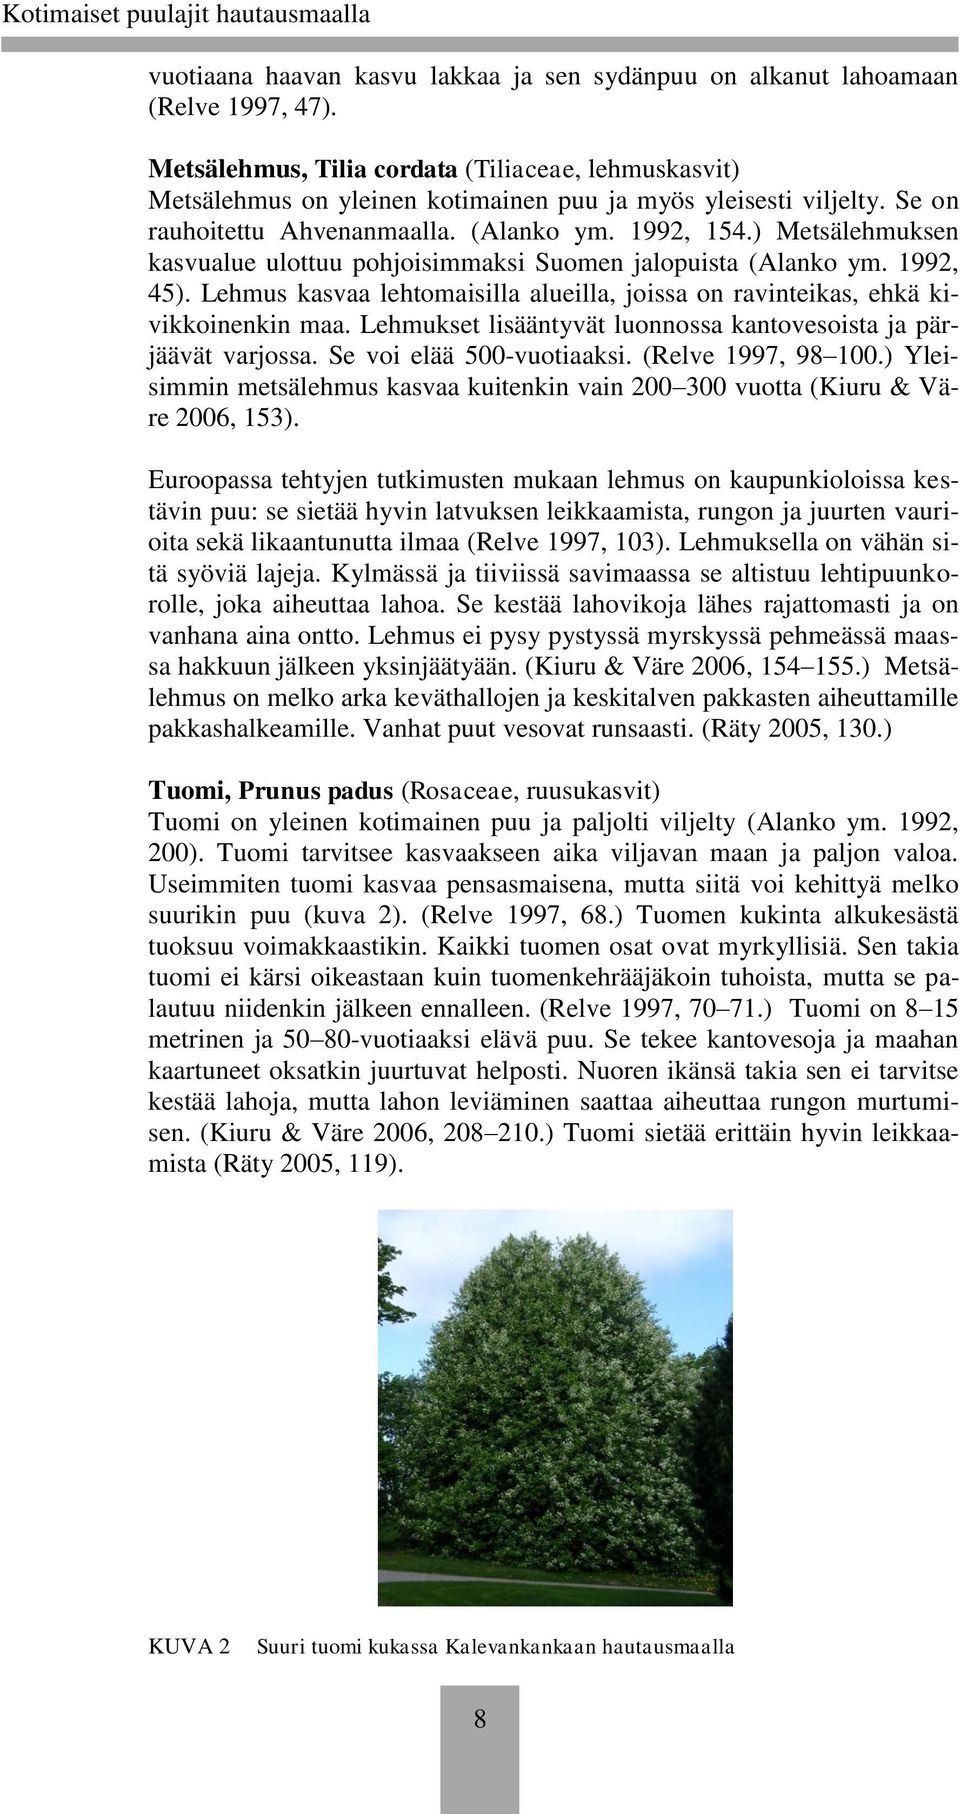 ) Metsälehmuksen kasvualue ulottuu pohjoisimmaksi Suomen jalopuista (Alanko ym. 1992, 45). Lehmus kasvaa lehtomaisilla alueilla, joissa on ravinteikas, ehkä kivikkoinenkin maa.